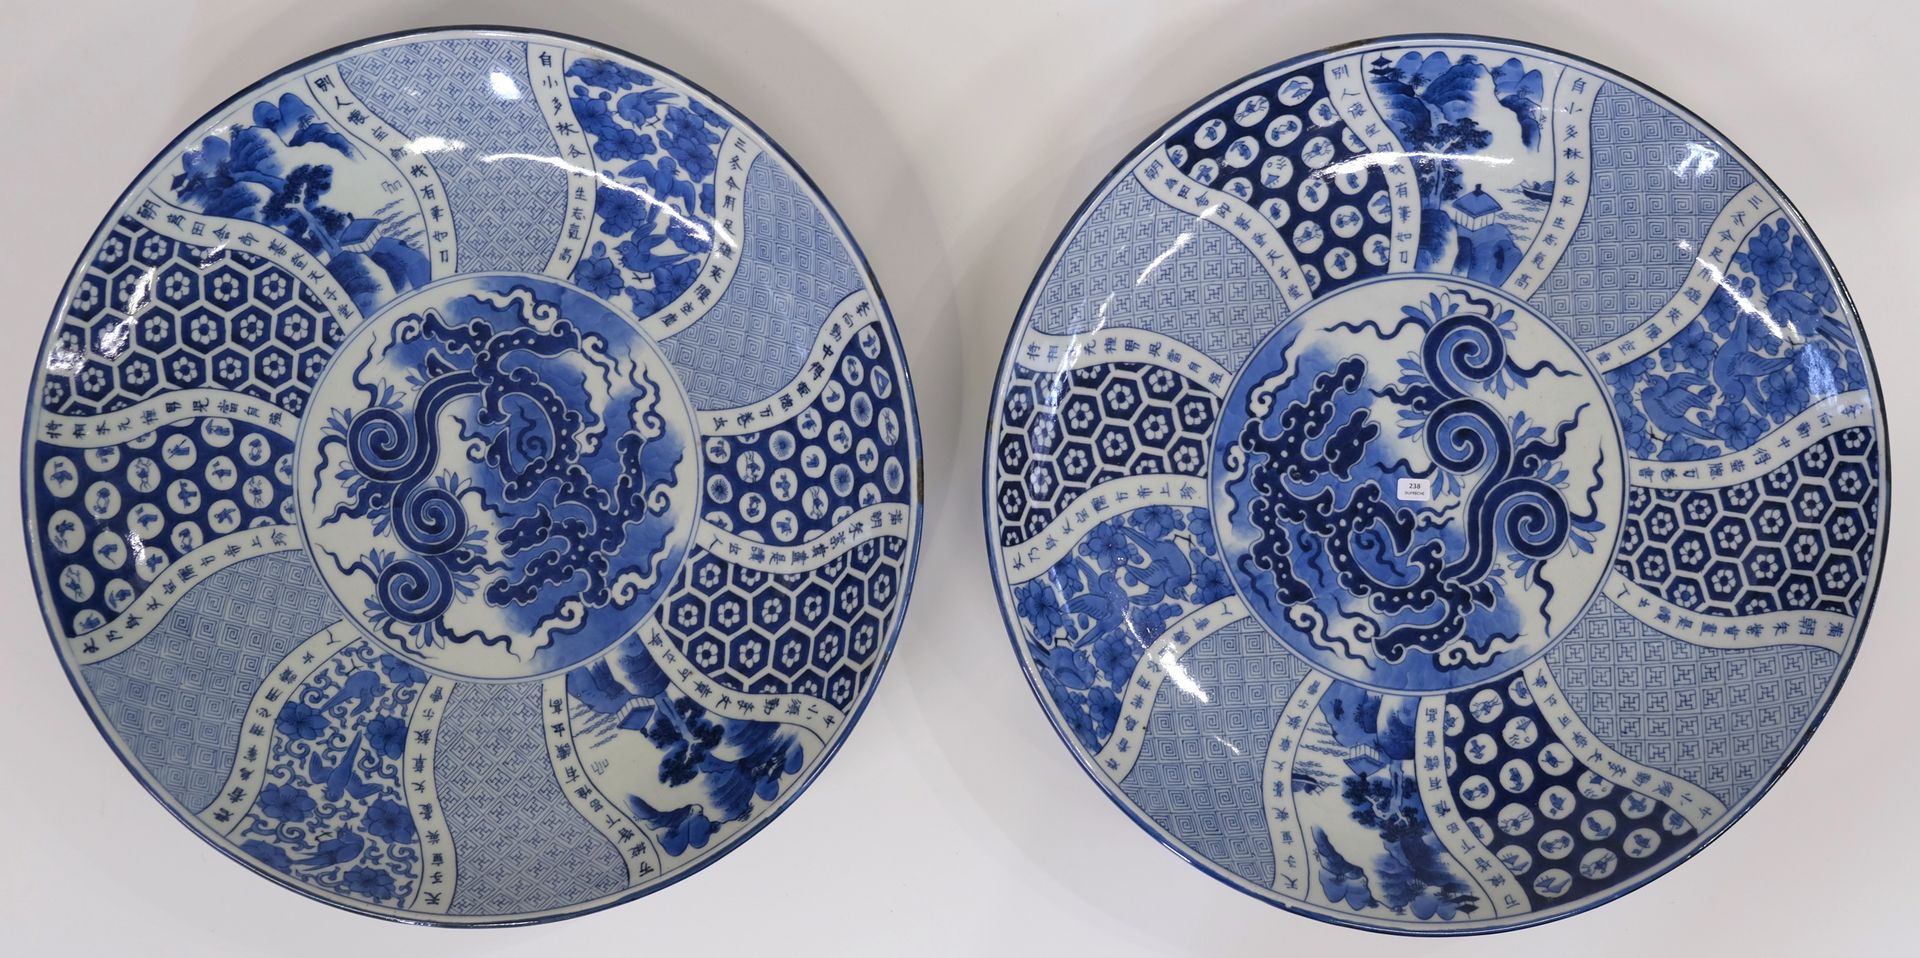 Null 一对大瓷盘，上有蓝色单色装饰，包括鸟类、风景和几何图案。背面有签名。日本，明治时期（1868-1912 年）。直径 48.5 厘米。